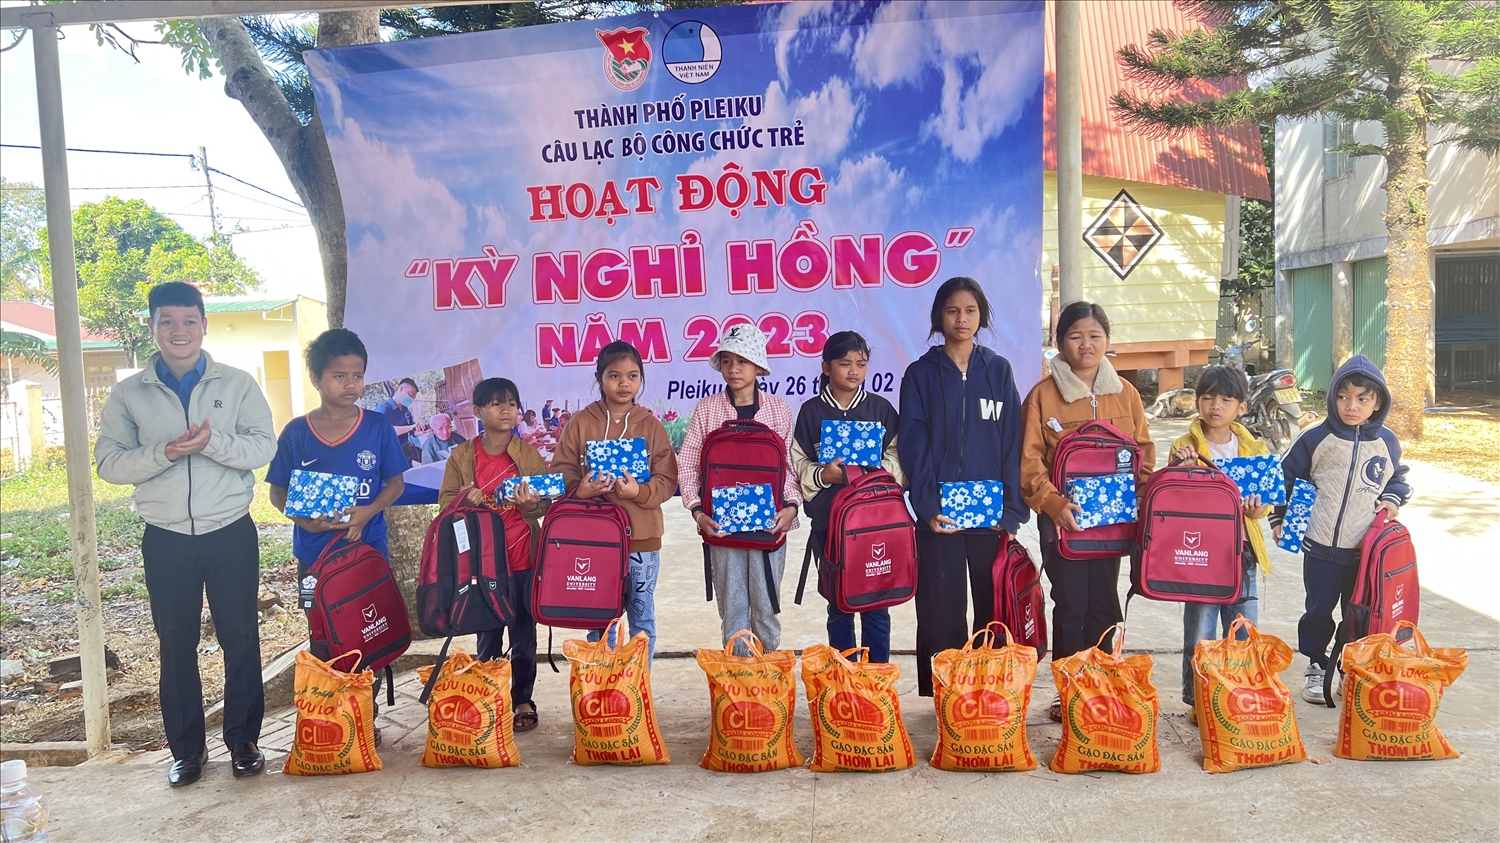 Tổ chức hoạt động kỳ nghỉ hồng cho bà con và thiếu nhi DTTS có hoàn cảnh khó khăn tại làng Ia Nueng, xã Biển Hồ, Tp. Pleiku